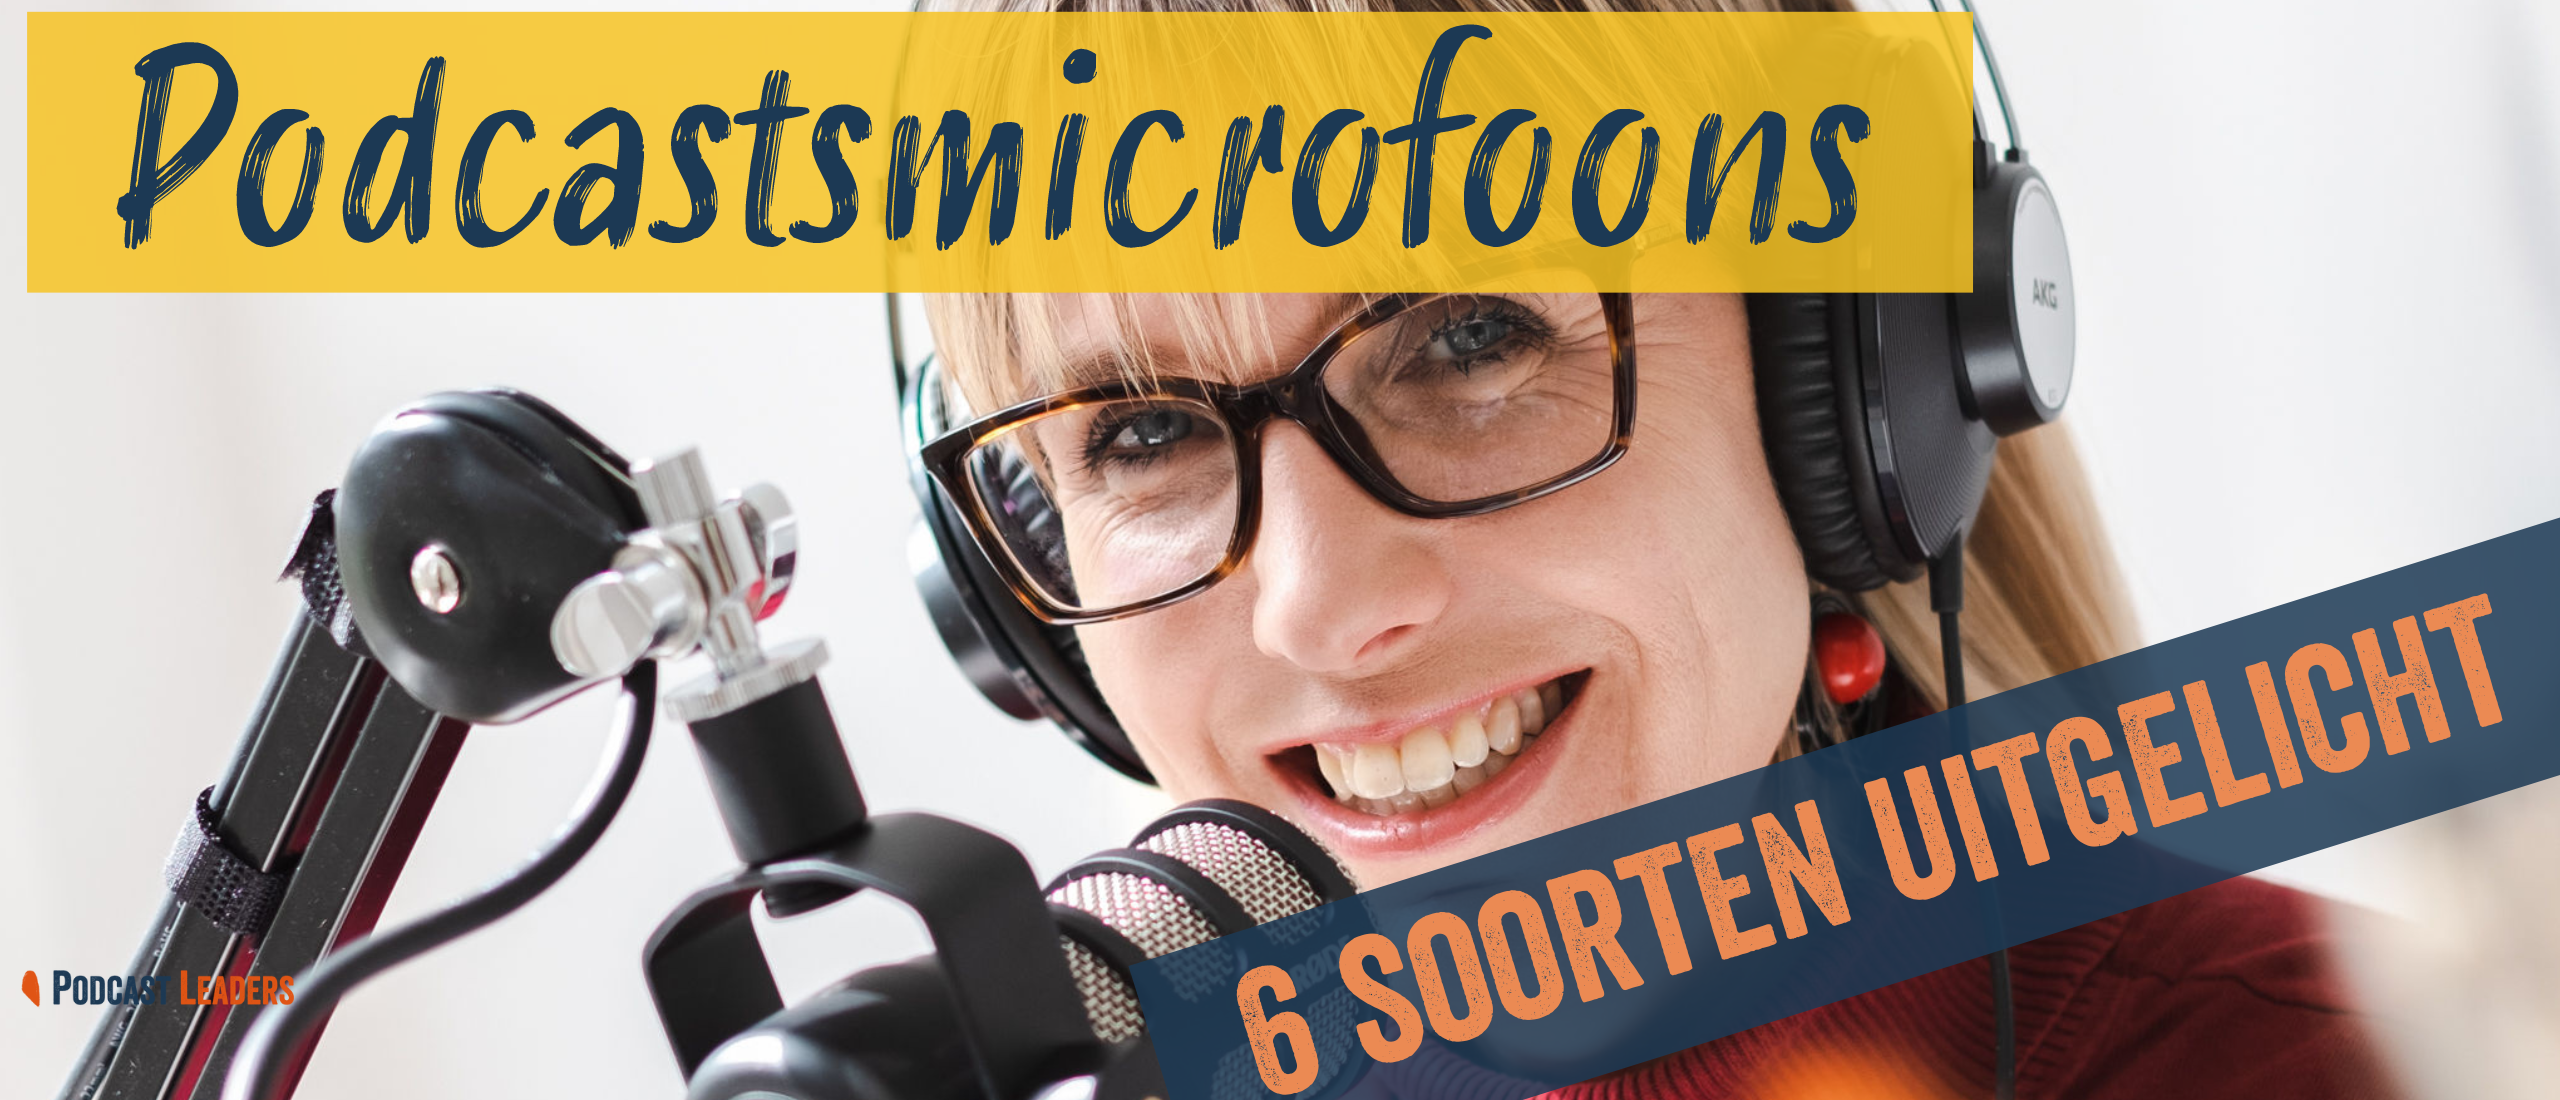 Podcastmicrofoons 6 soorten uitgelicht